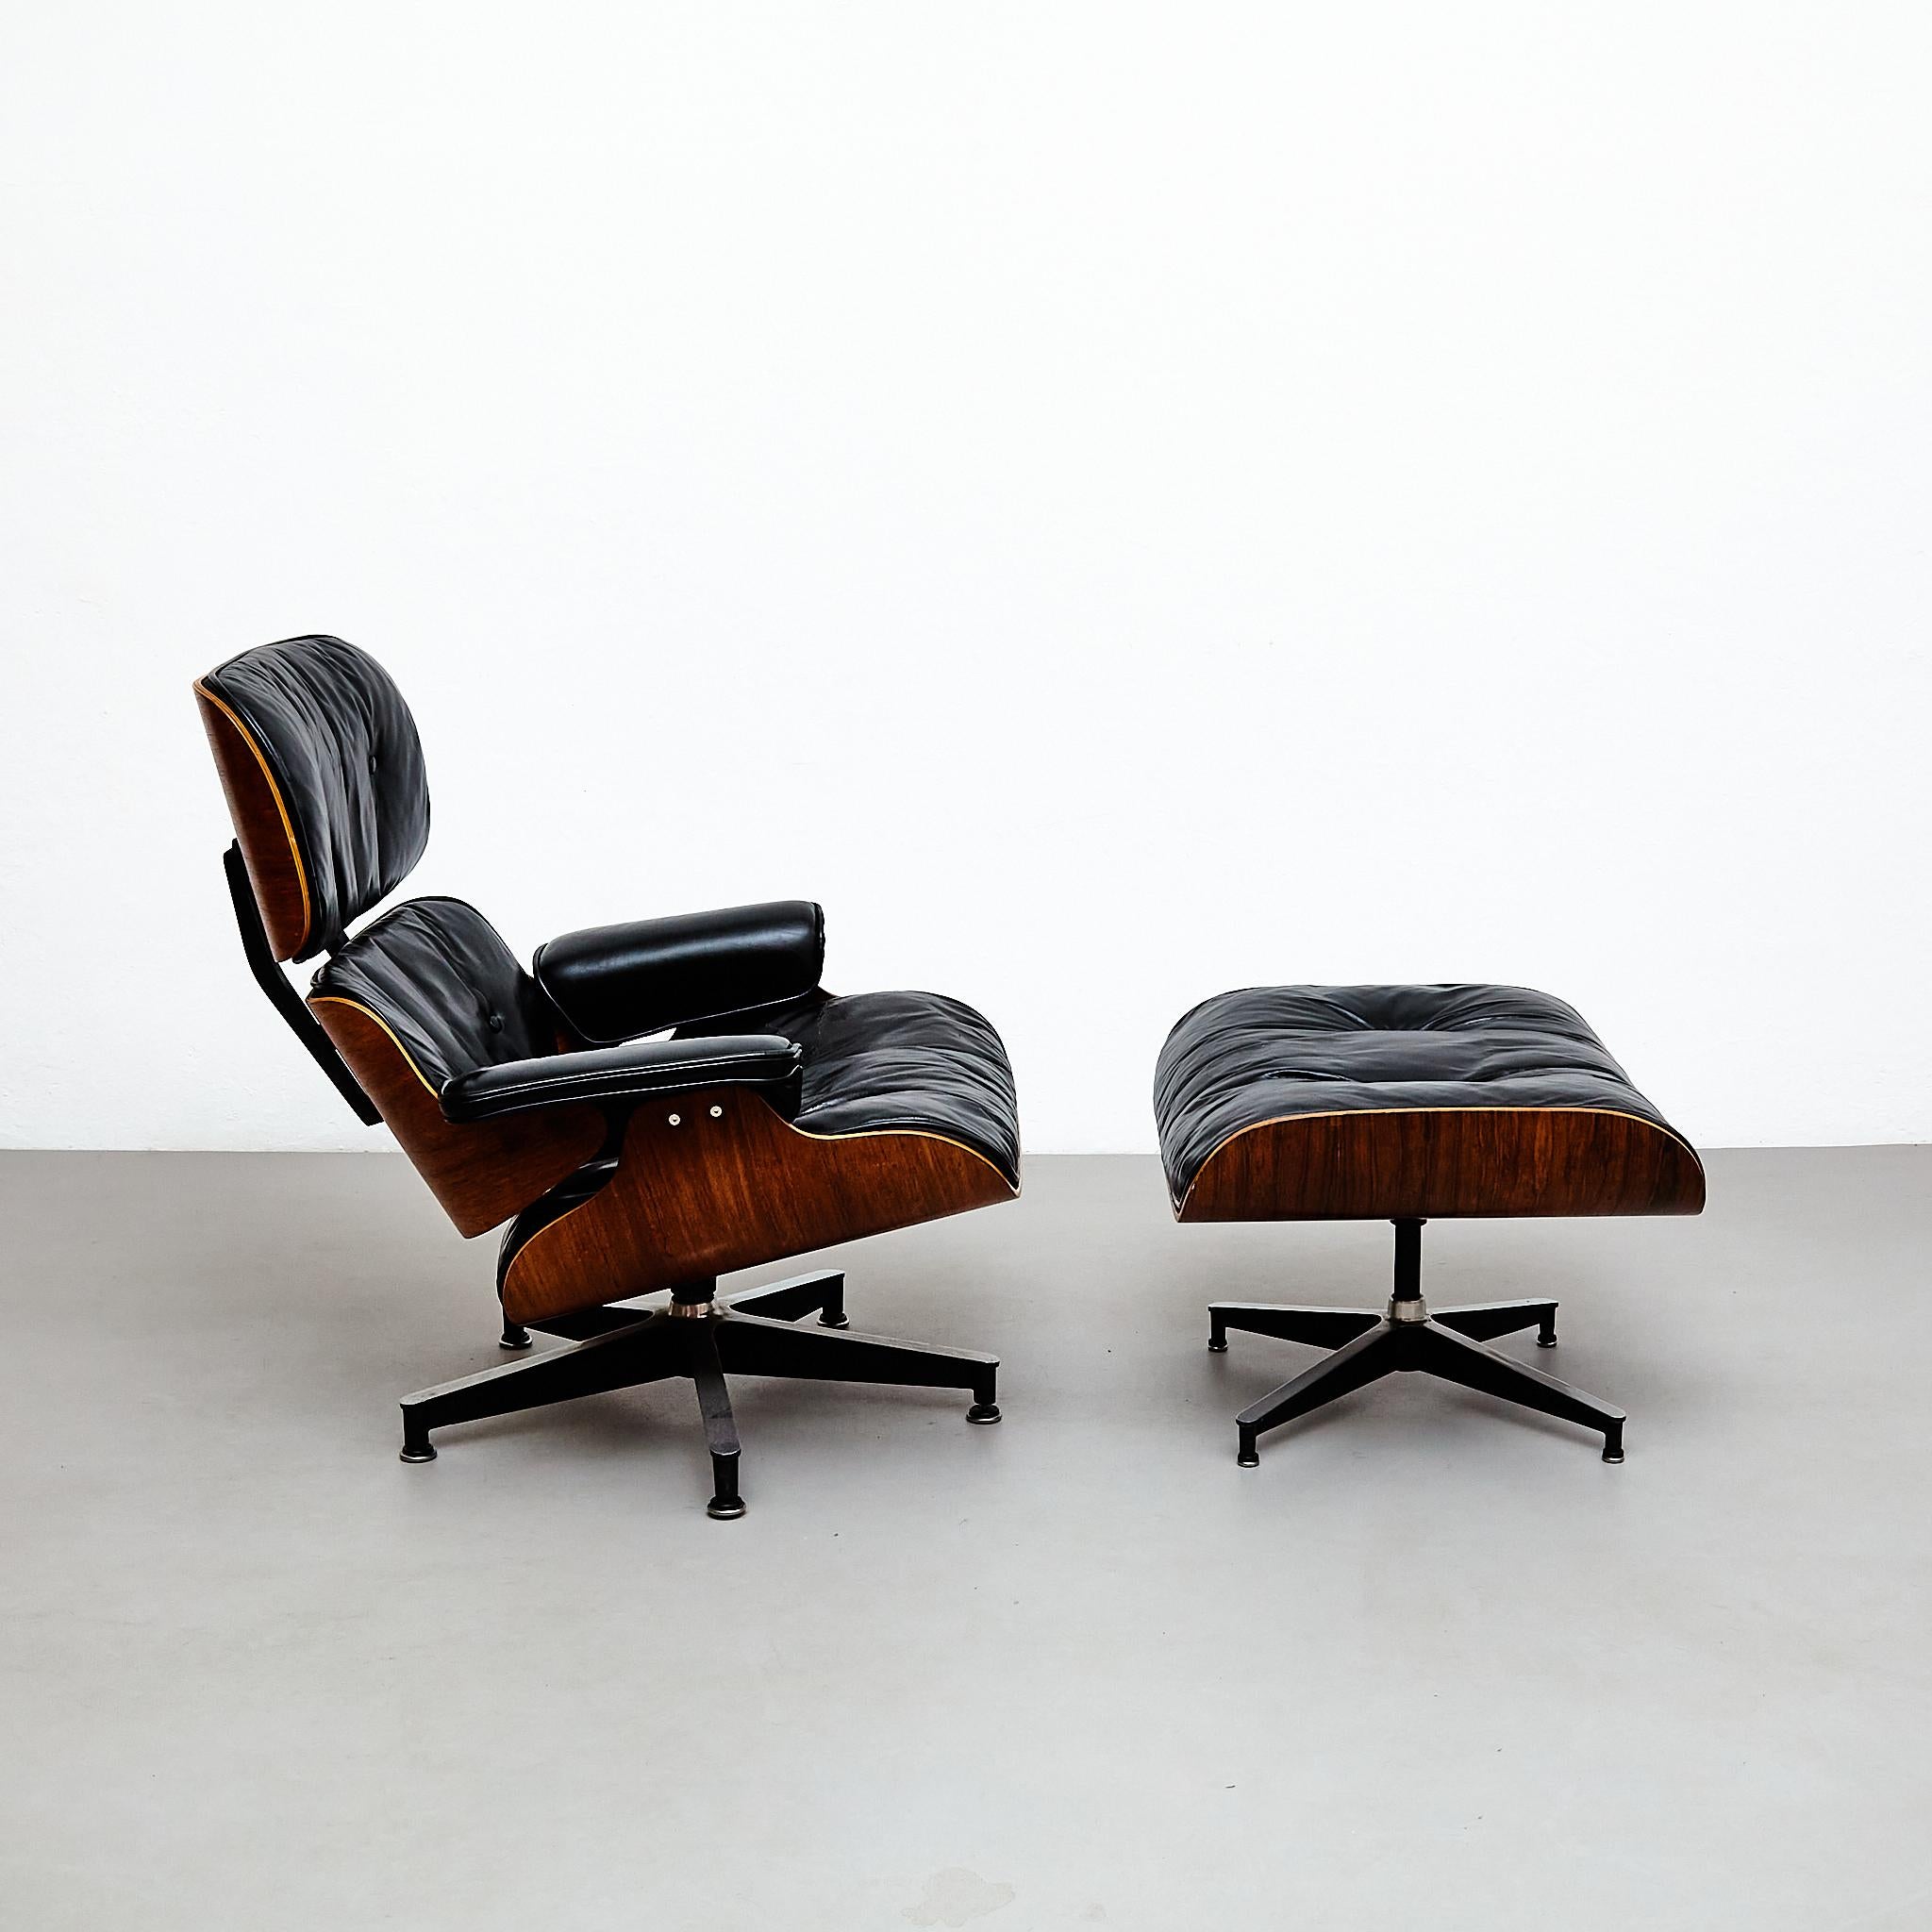 La chaise longue et l'ottoman Eames, conçus par Charles et Ray Eames, sont des meubles intemporels et emblématiques qui incarnent le confort, le savoir-faire et le design moderne. Fabriquée par Herman Miller à Zeeland, aux États-Unis, cette chaise